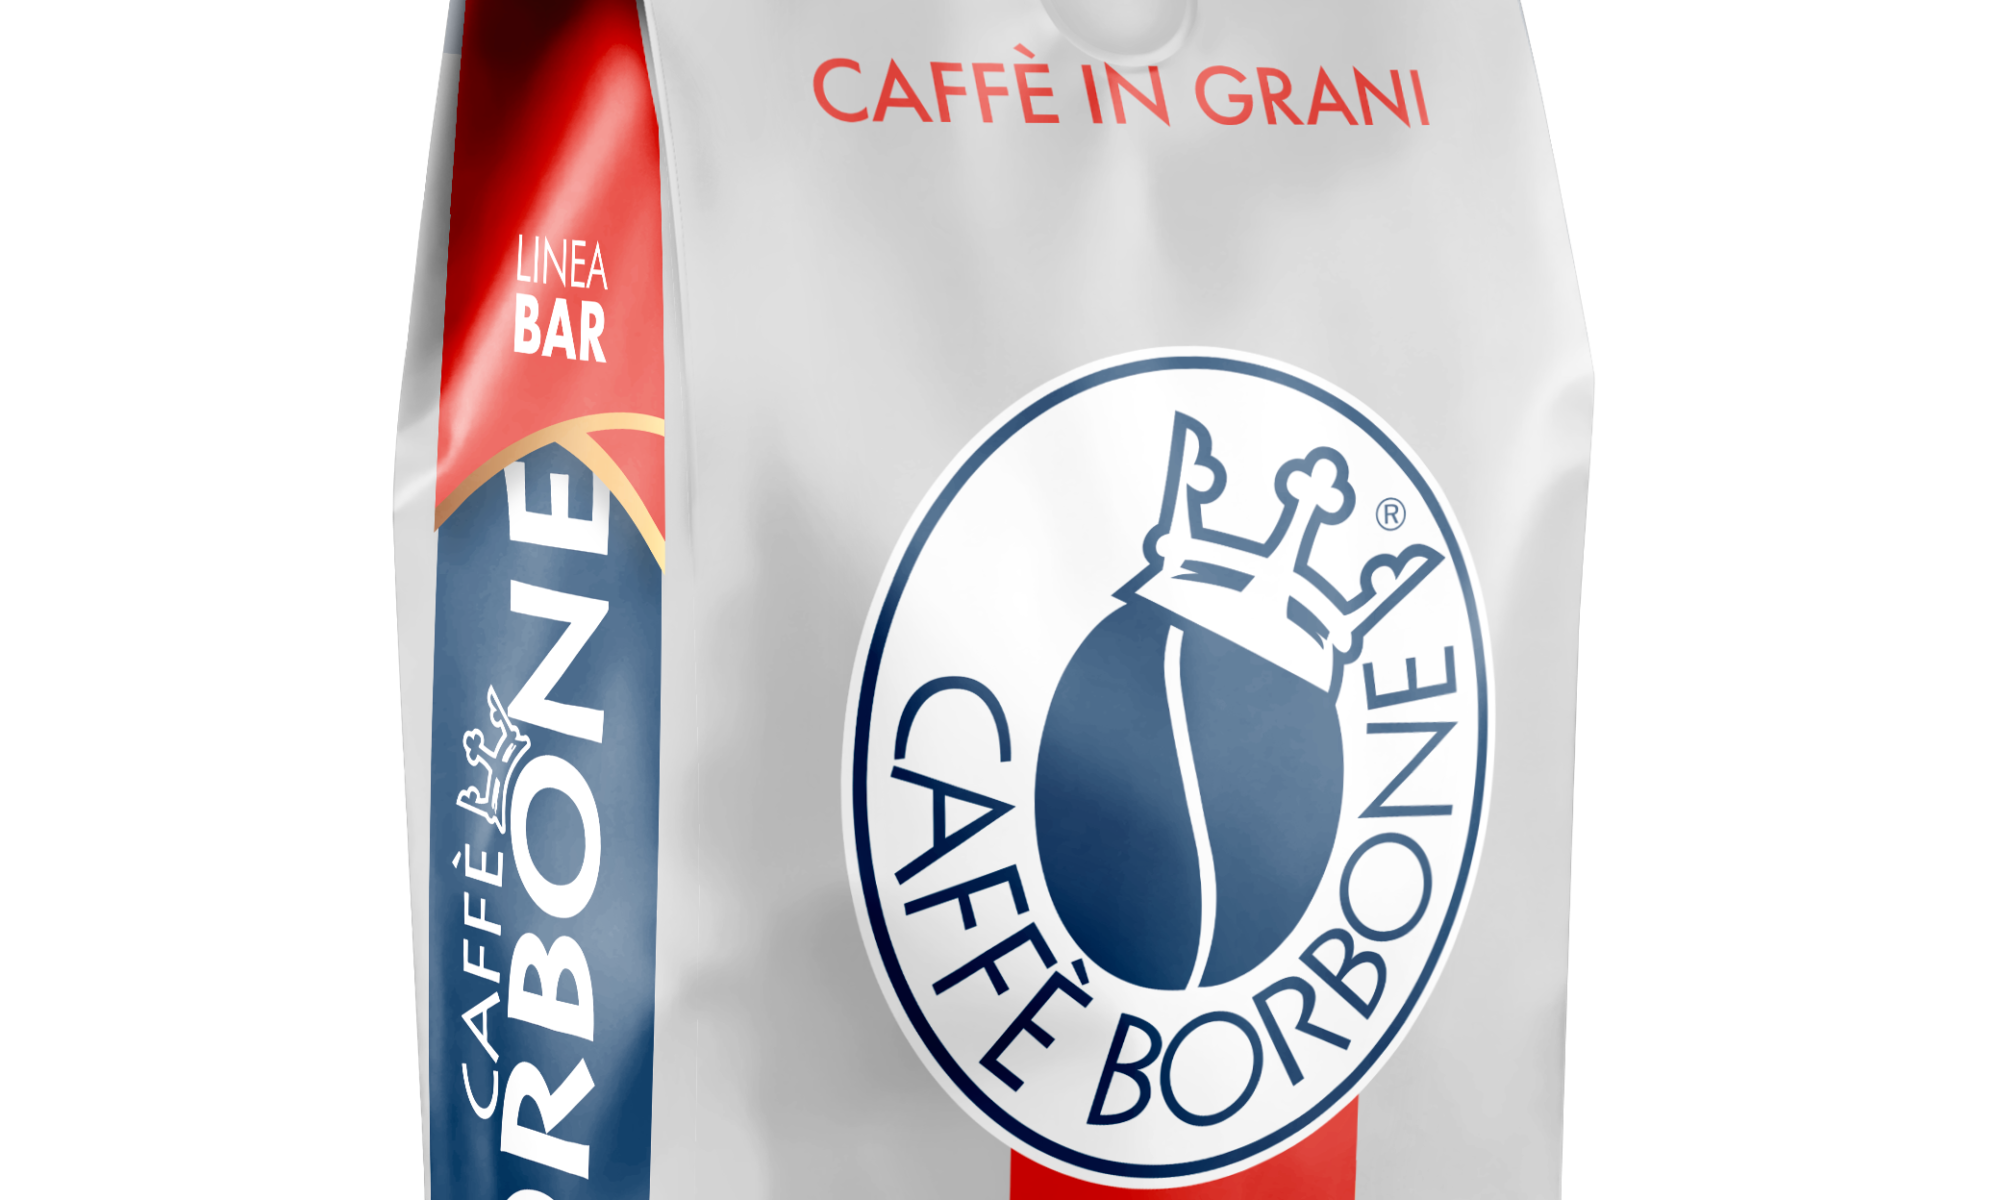 BORBONE GranBar Mélange Rouge grains 1Kg – M2D vending SA